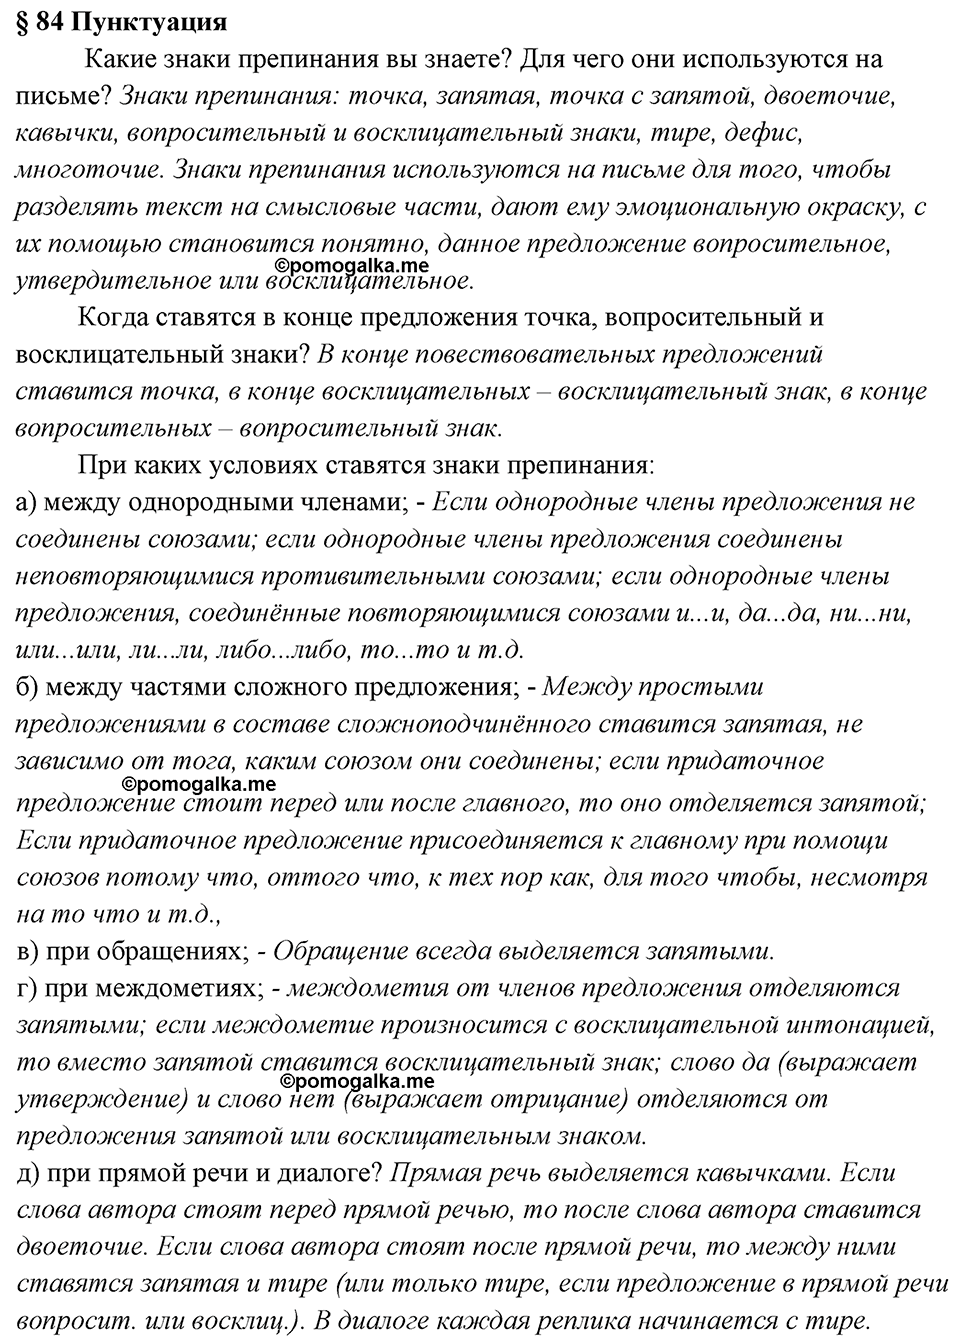 вопросы к §84 русский язык 7 класс Ладыженская, Баранов